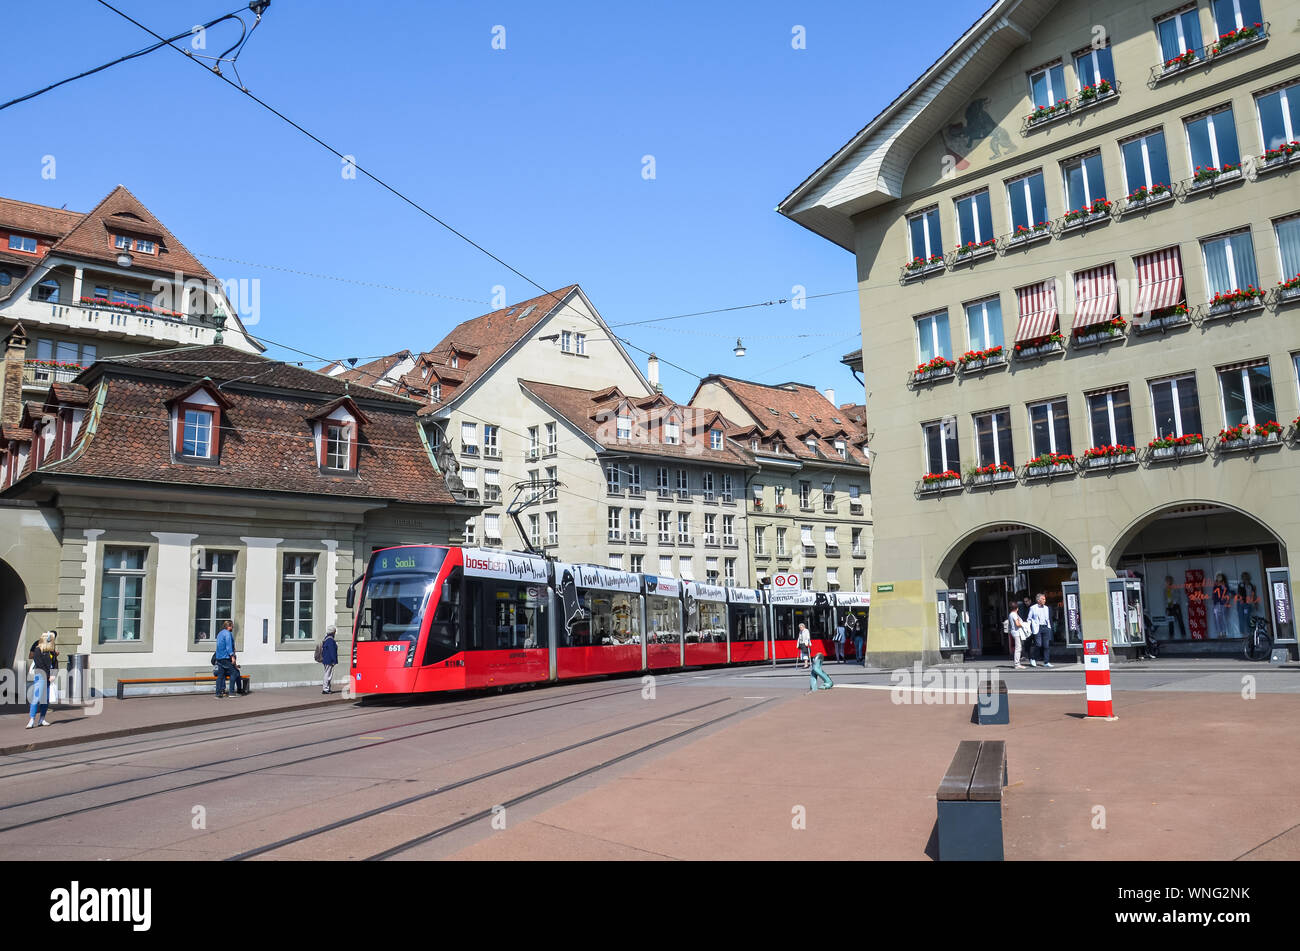 Bern, Svizzera - 14 agosto 2019: tram rosso su strada nel centro della capitale della Svizzera. I mezzi di trasporto pubblici. Edifici storici. La gente per strada. La vita quotidiana. Foto Stock